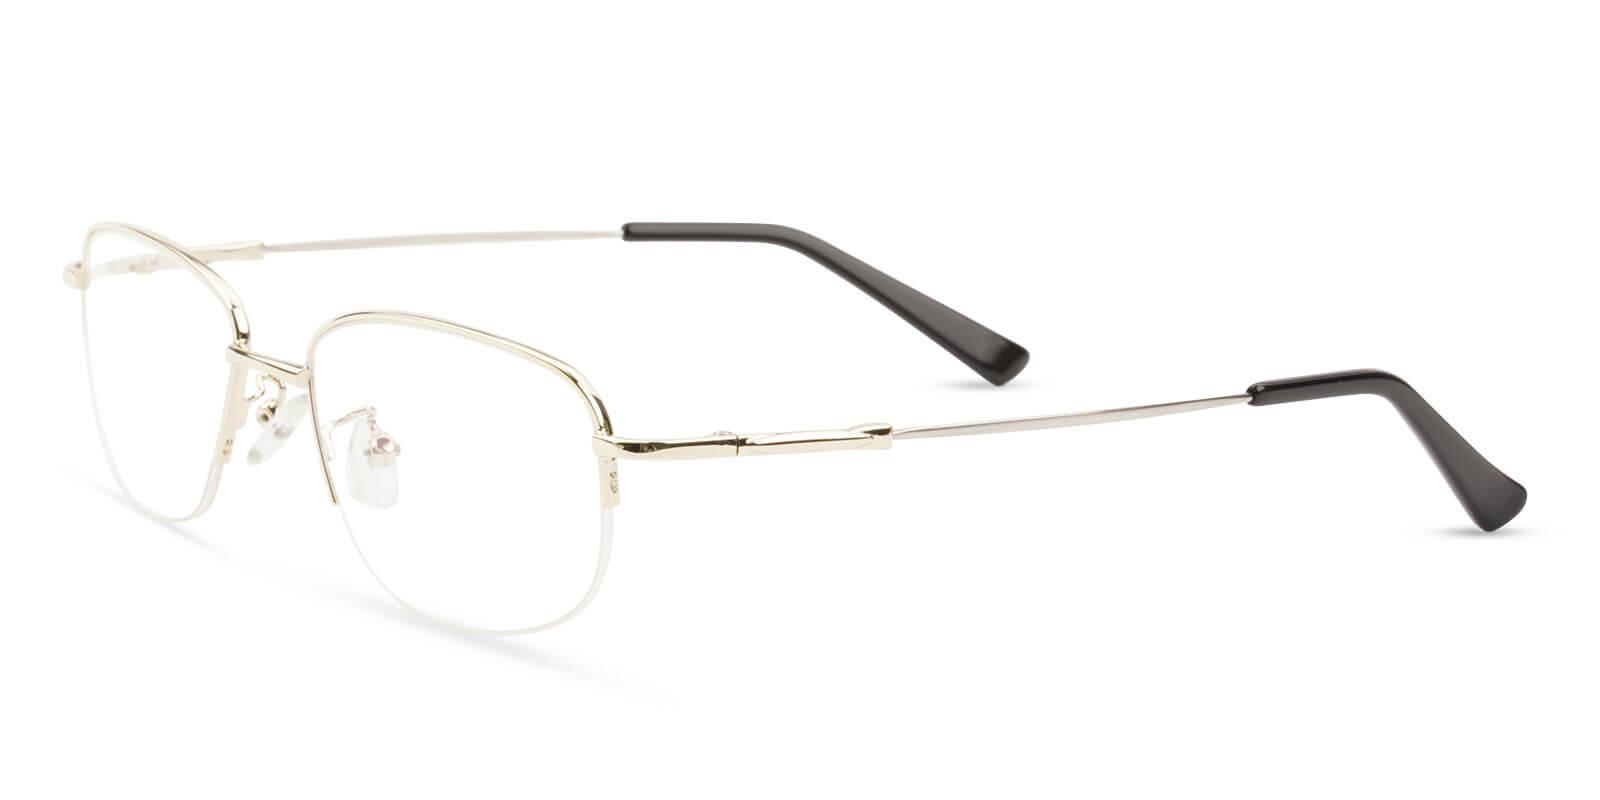 Joshua Gold Metal Eyeglasses , NosePads Frames from ABBE Glasses